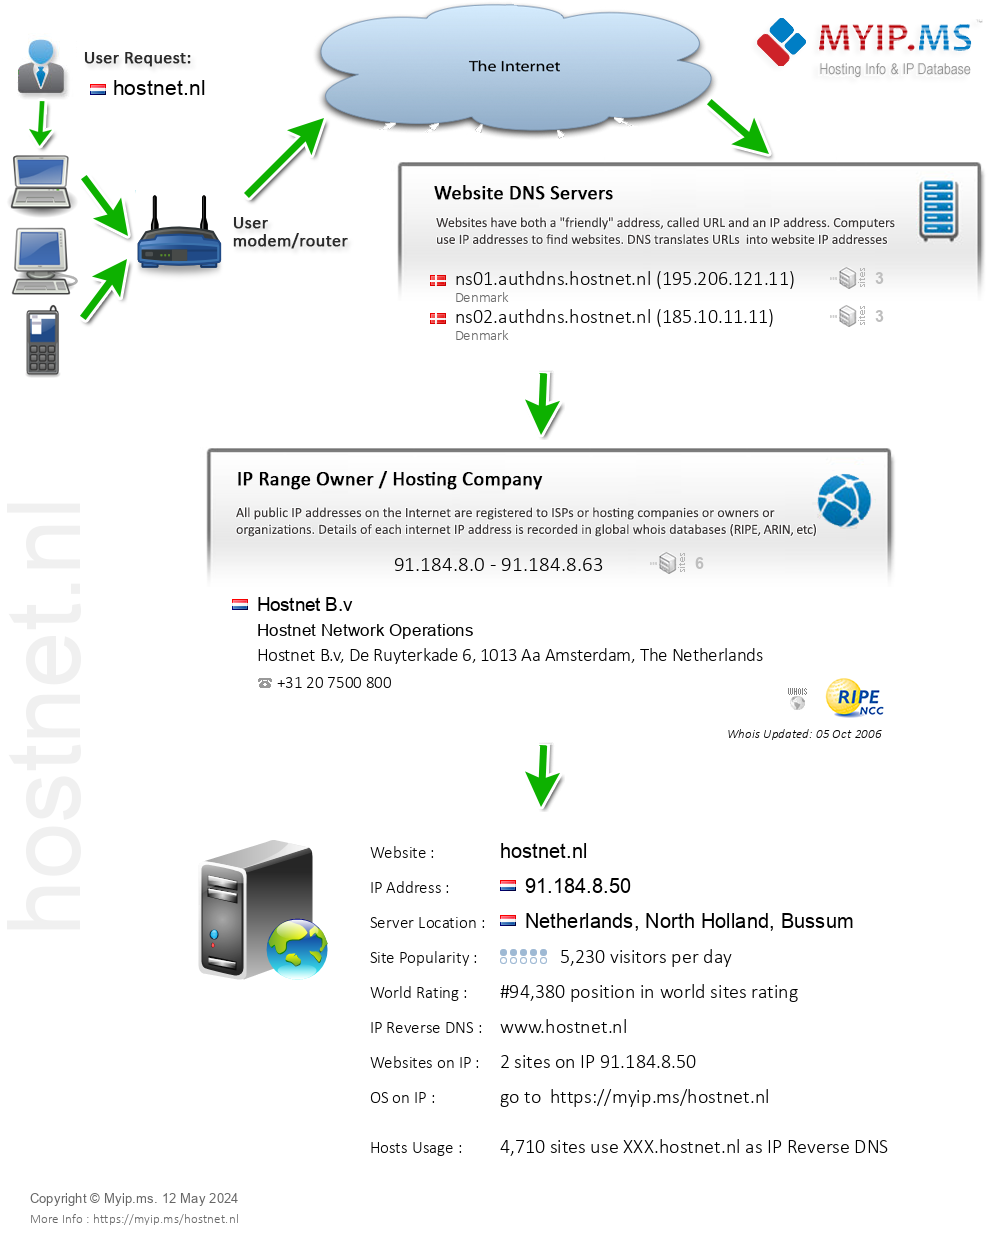 Hostnet.nl - Website Hosting Visual IP Diagram